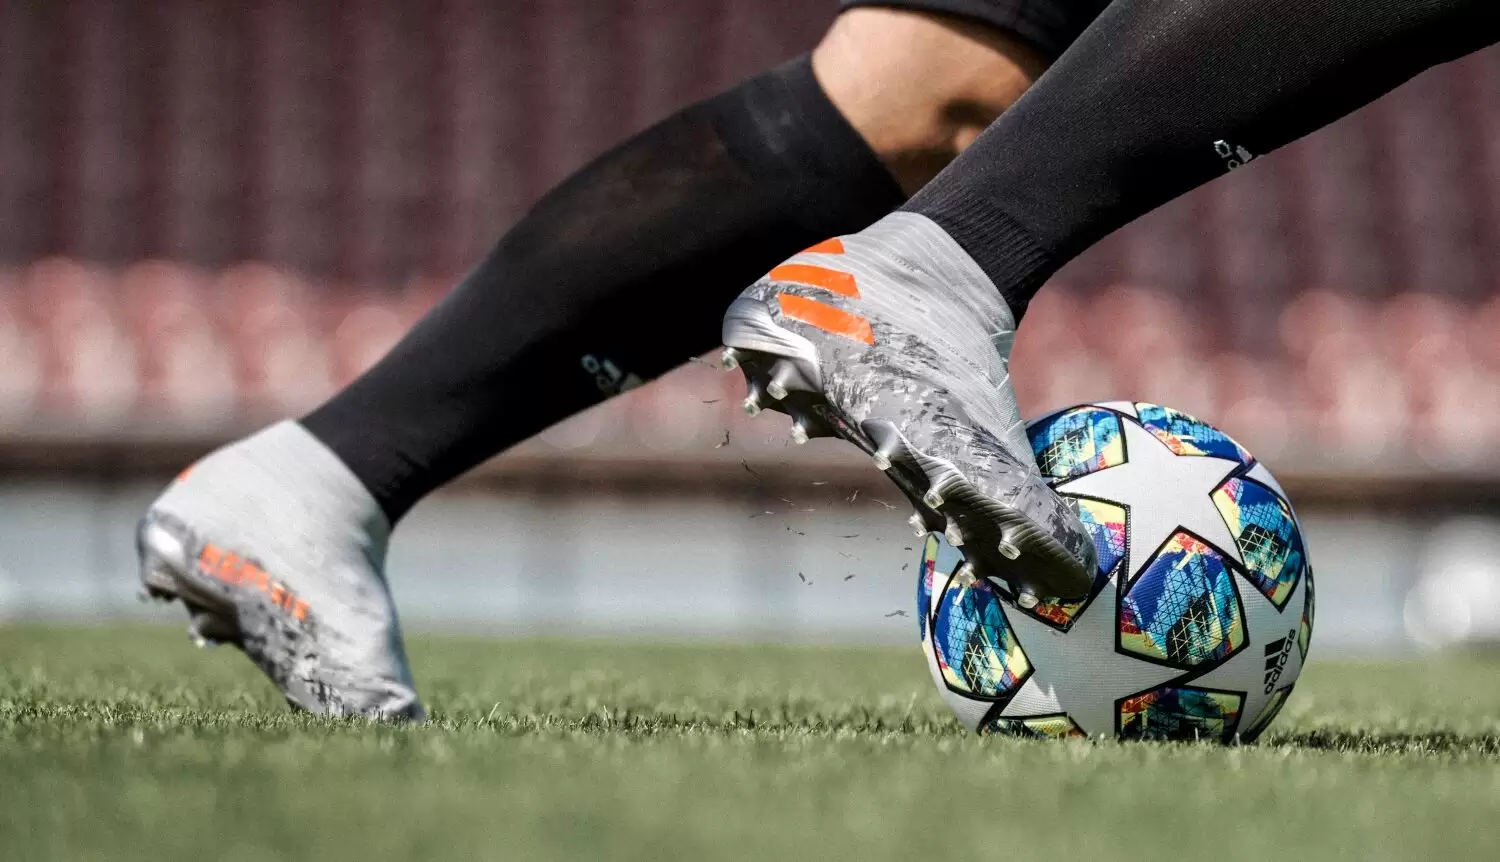 Distante Joya Comienzo adidas presentó los botines de Messi, Pogba y Dybala | Marketing Registrado